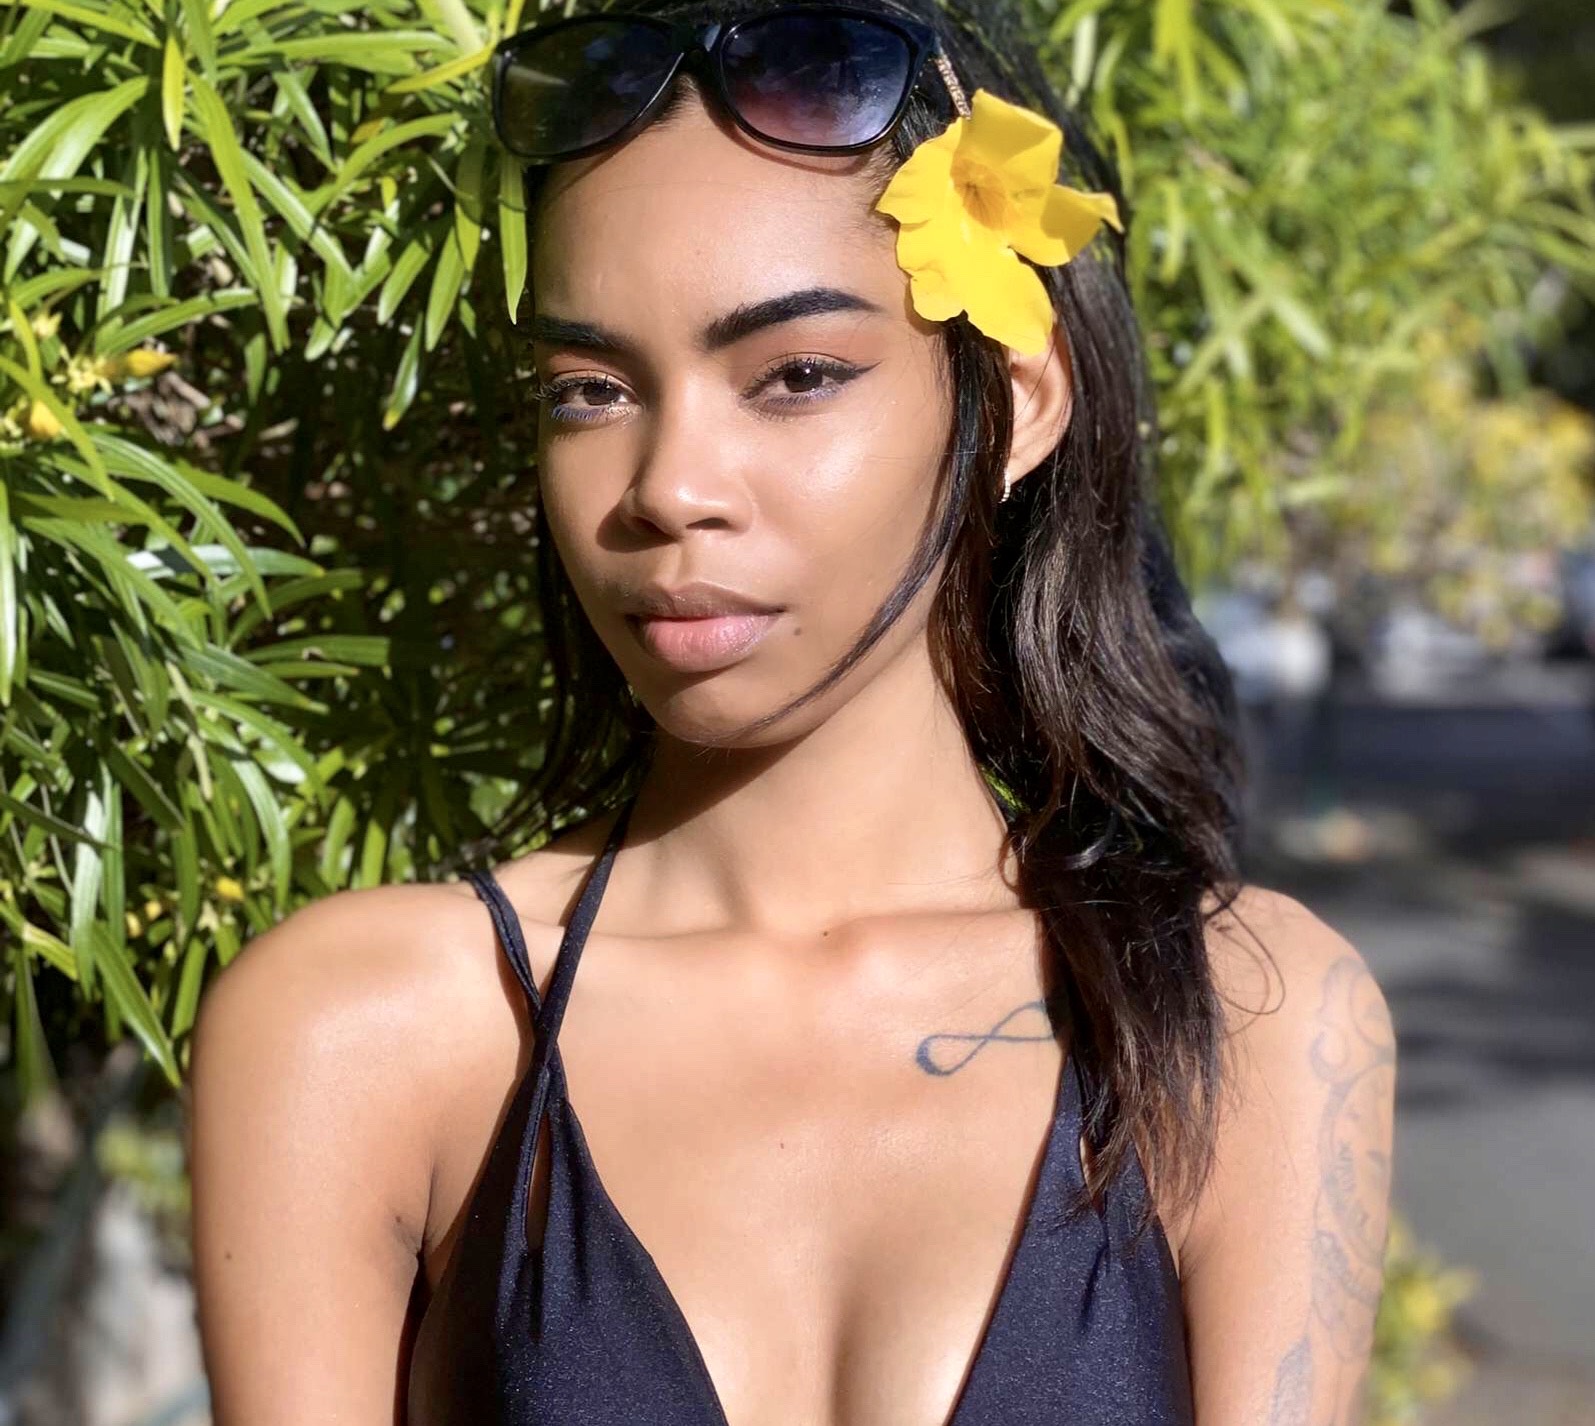 Gwenaëlle, la gagnante Elite Model Look Reunion Island 2019 de retour dans son île